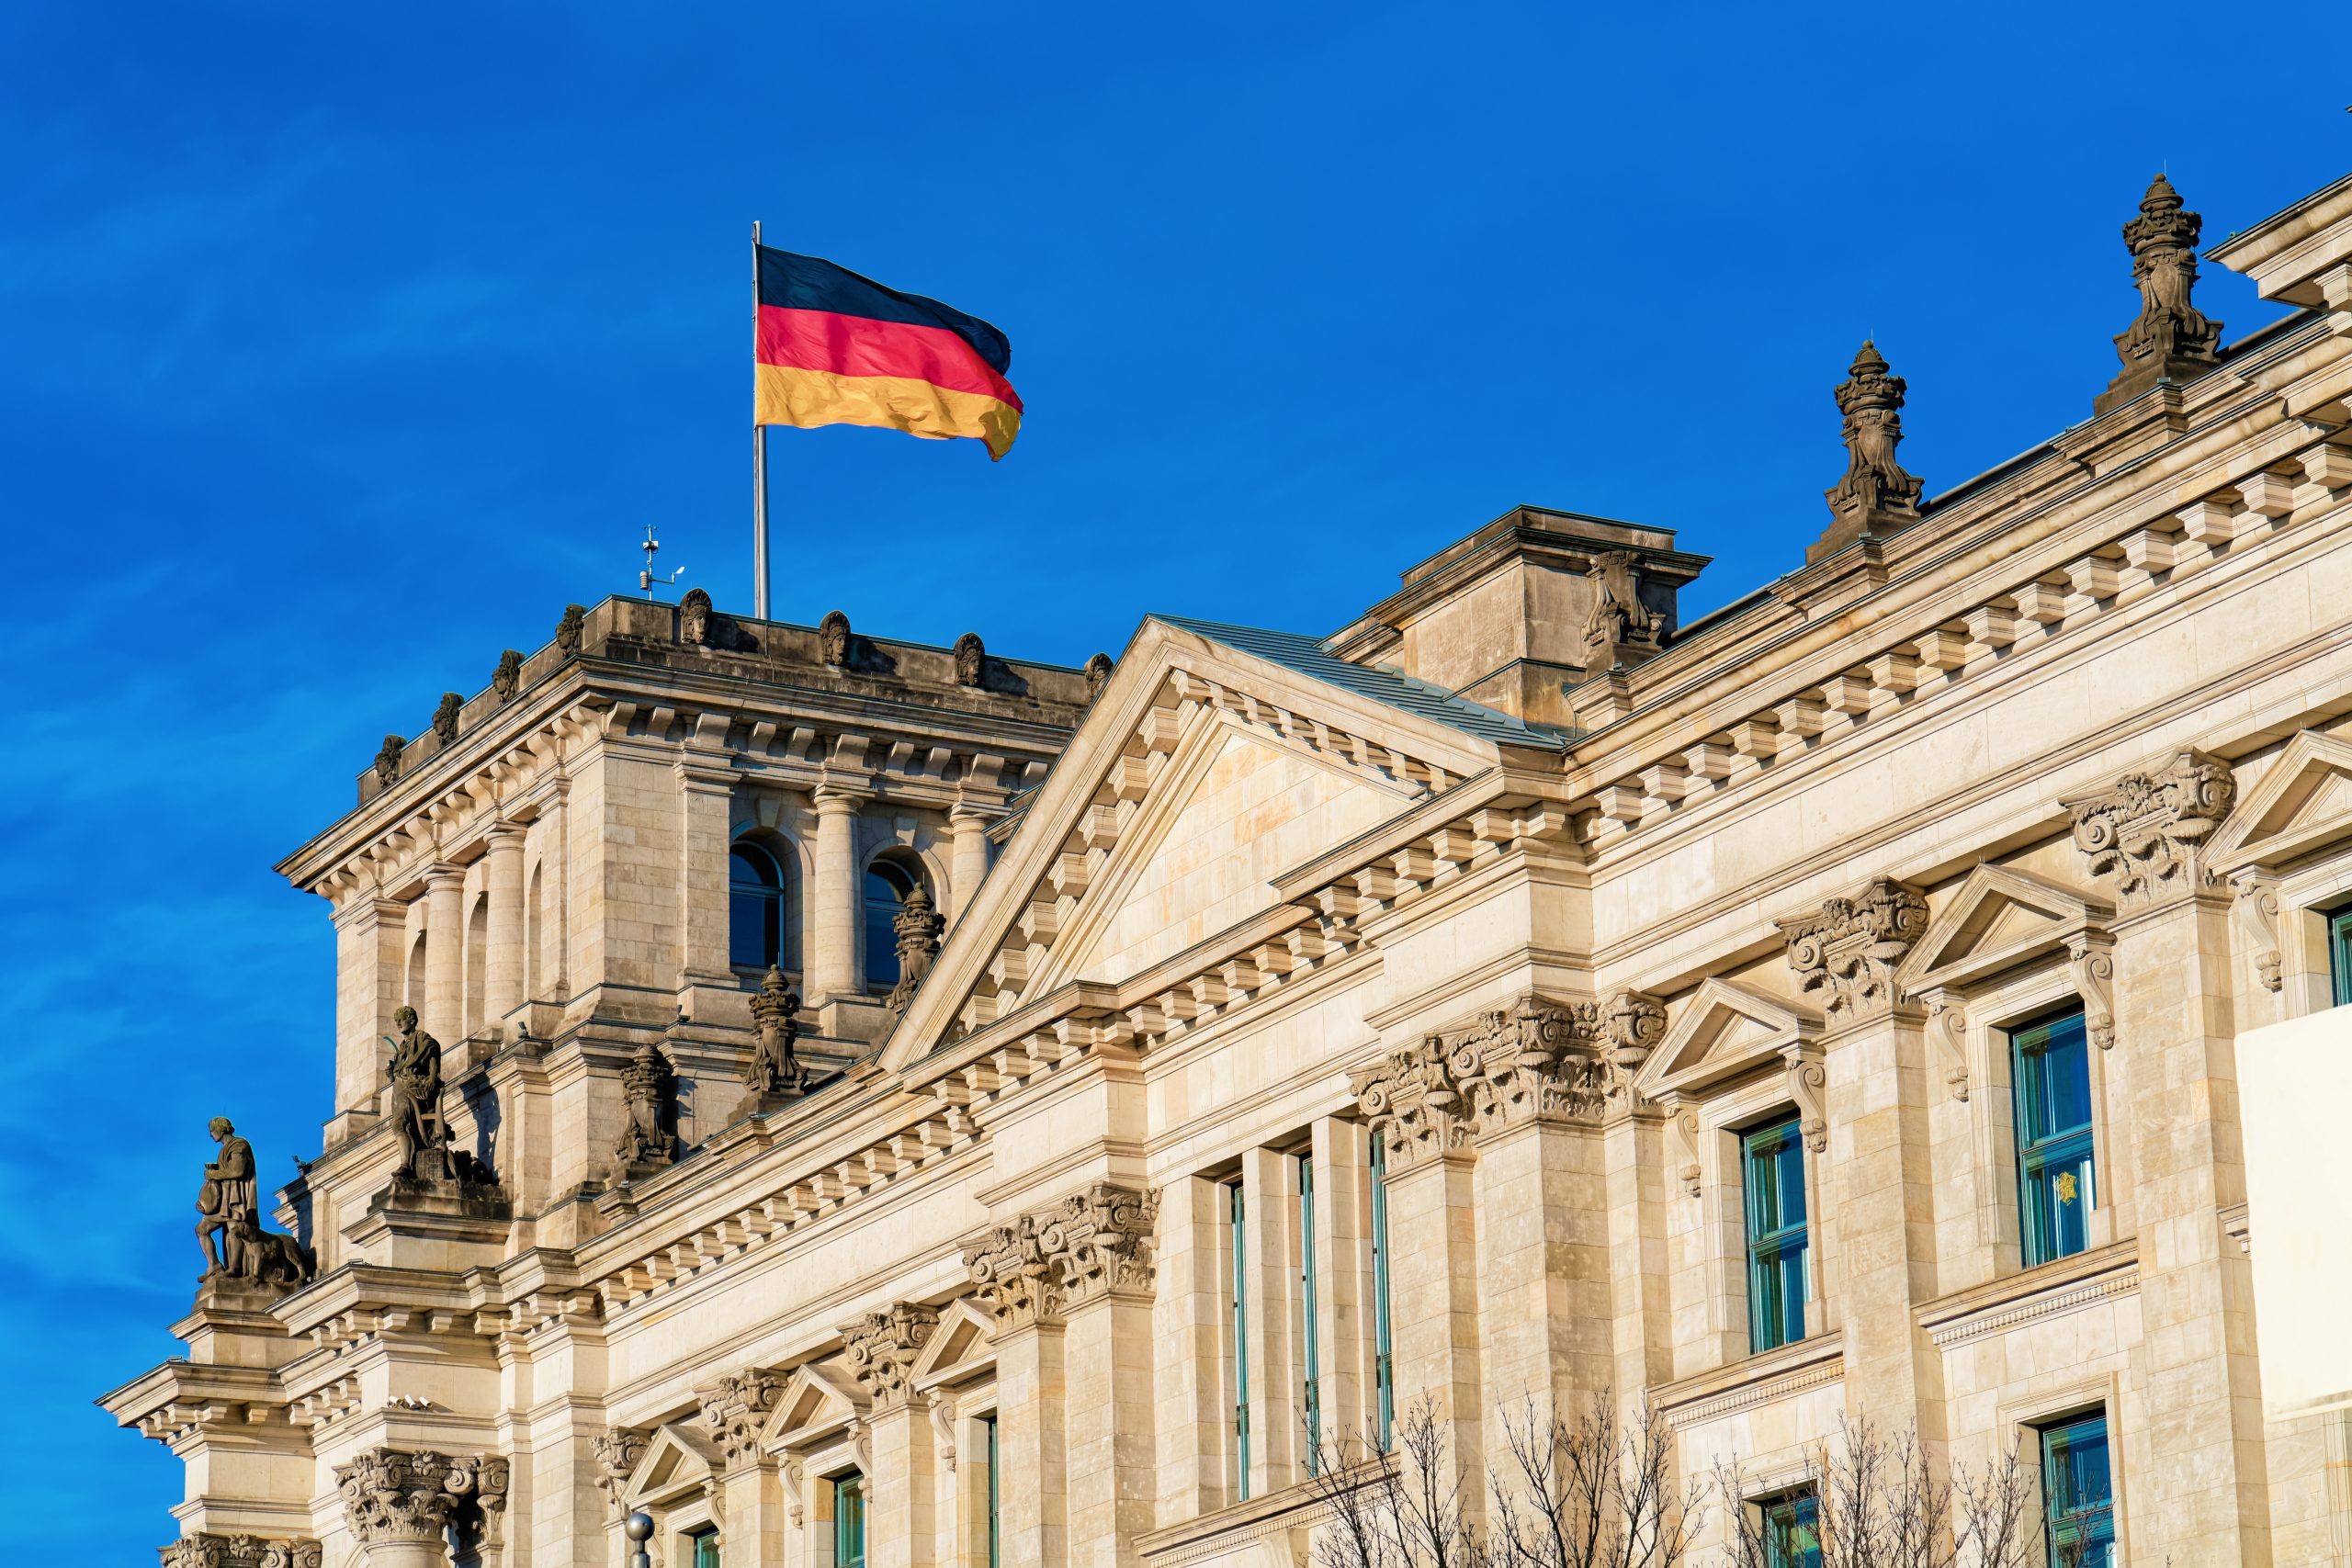 Arquitectura del edificio del Reichstag con la bandera alemana en el centro de Berlín, capital de Alemania en invierno en la calle. Casa del parlamento alemán Bundestag.